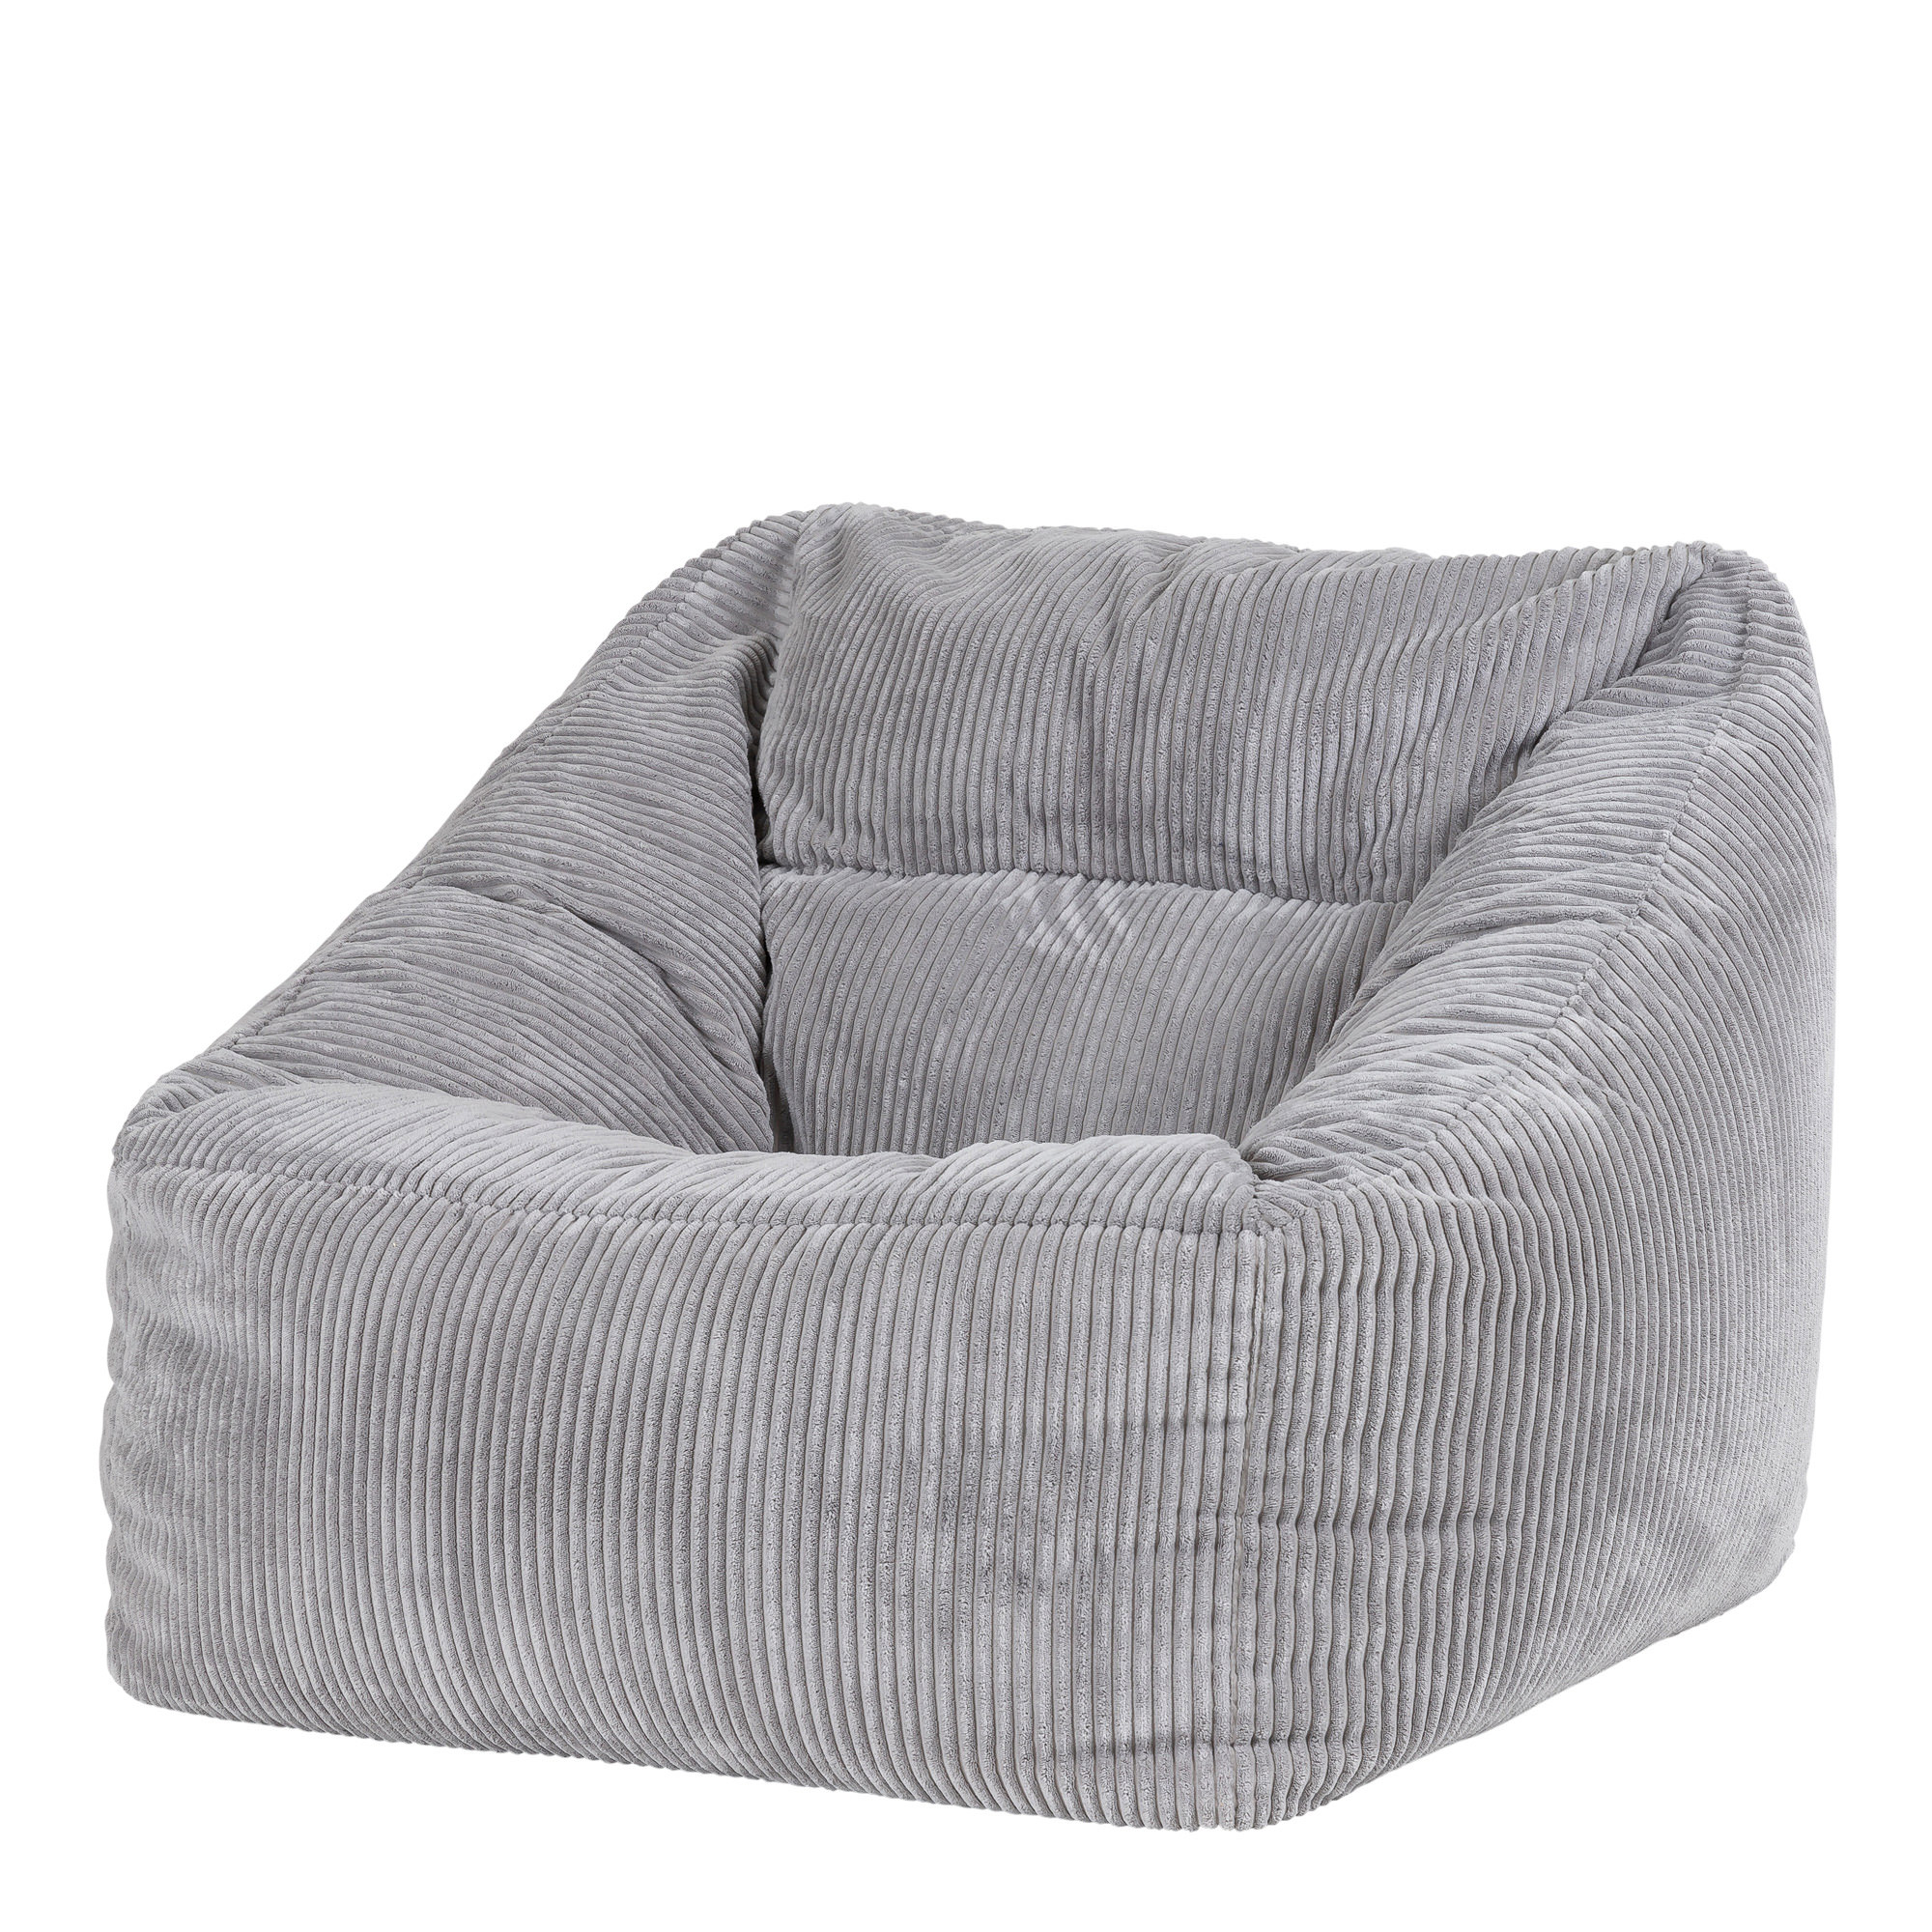 Puf sillón de pana gris claro